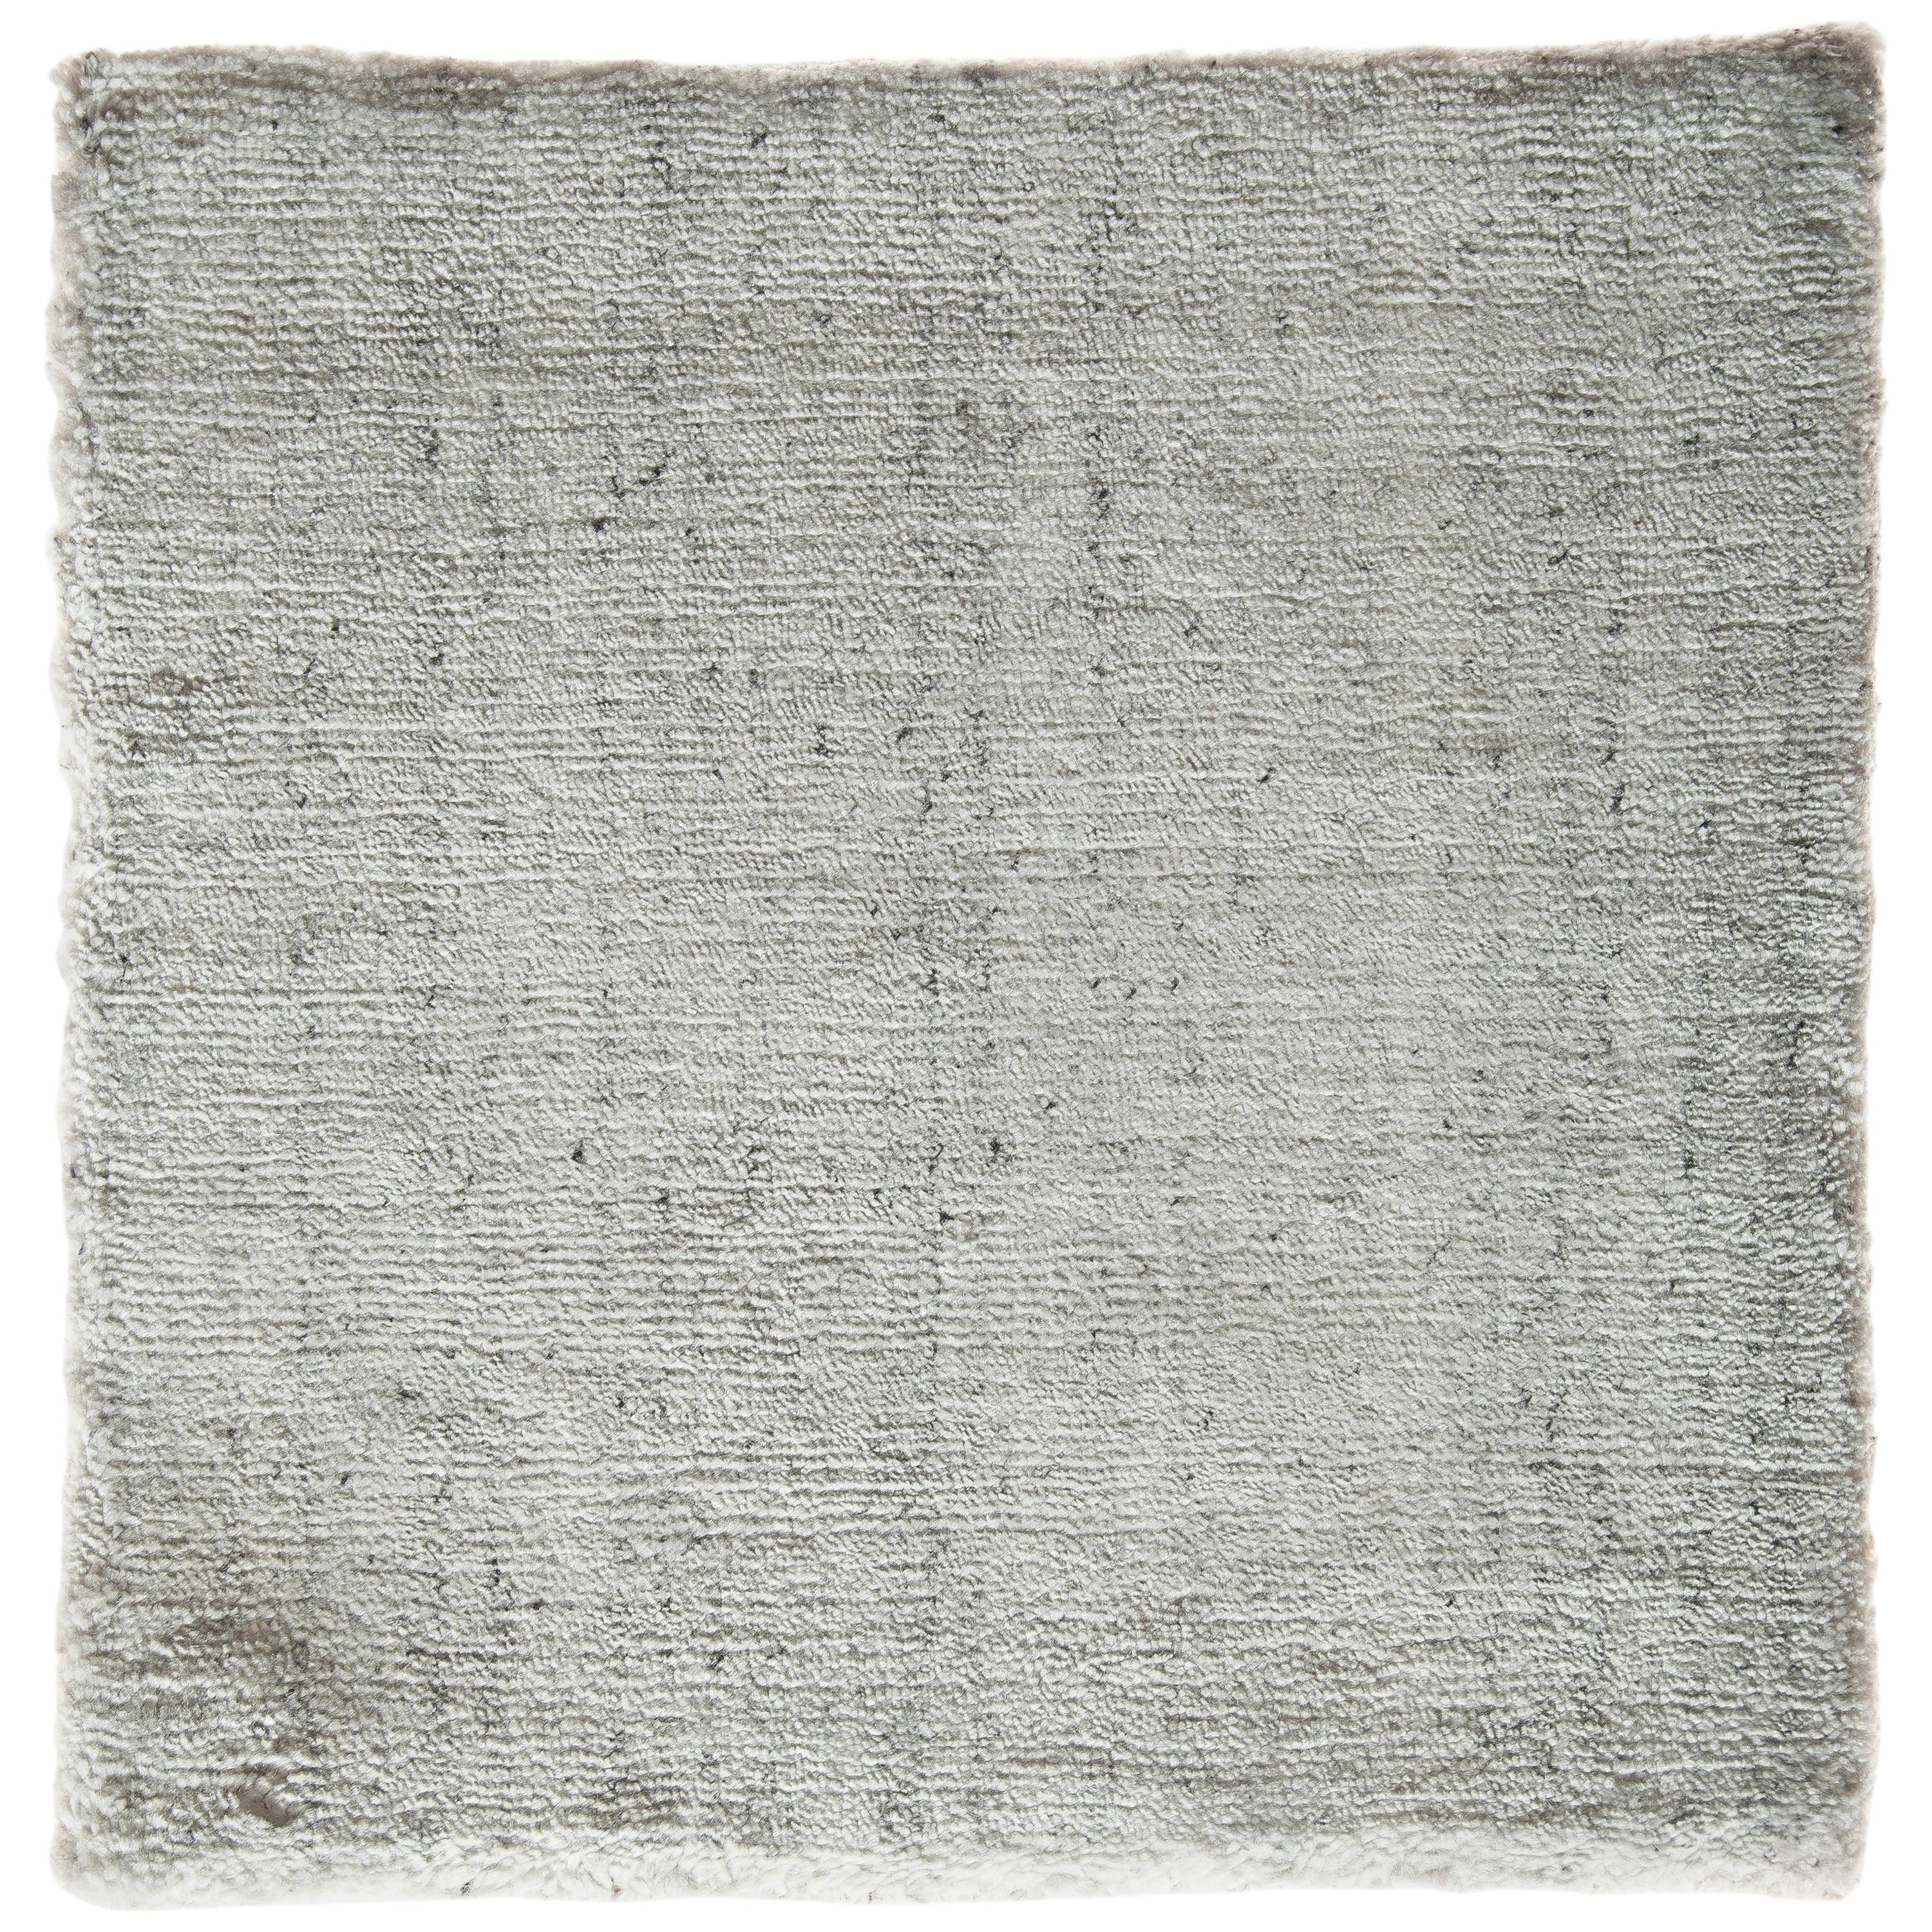 Zeitgenössischer, handgewobener, neutraler Teppich aus weißer, silberner Bambusseide